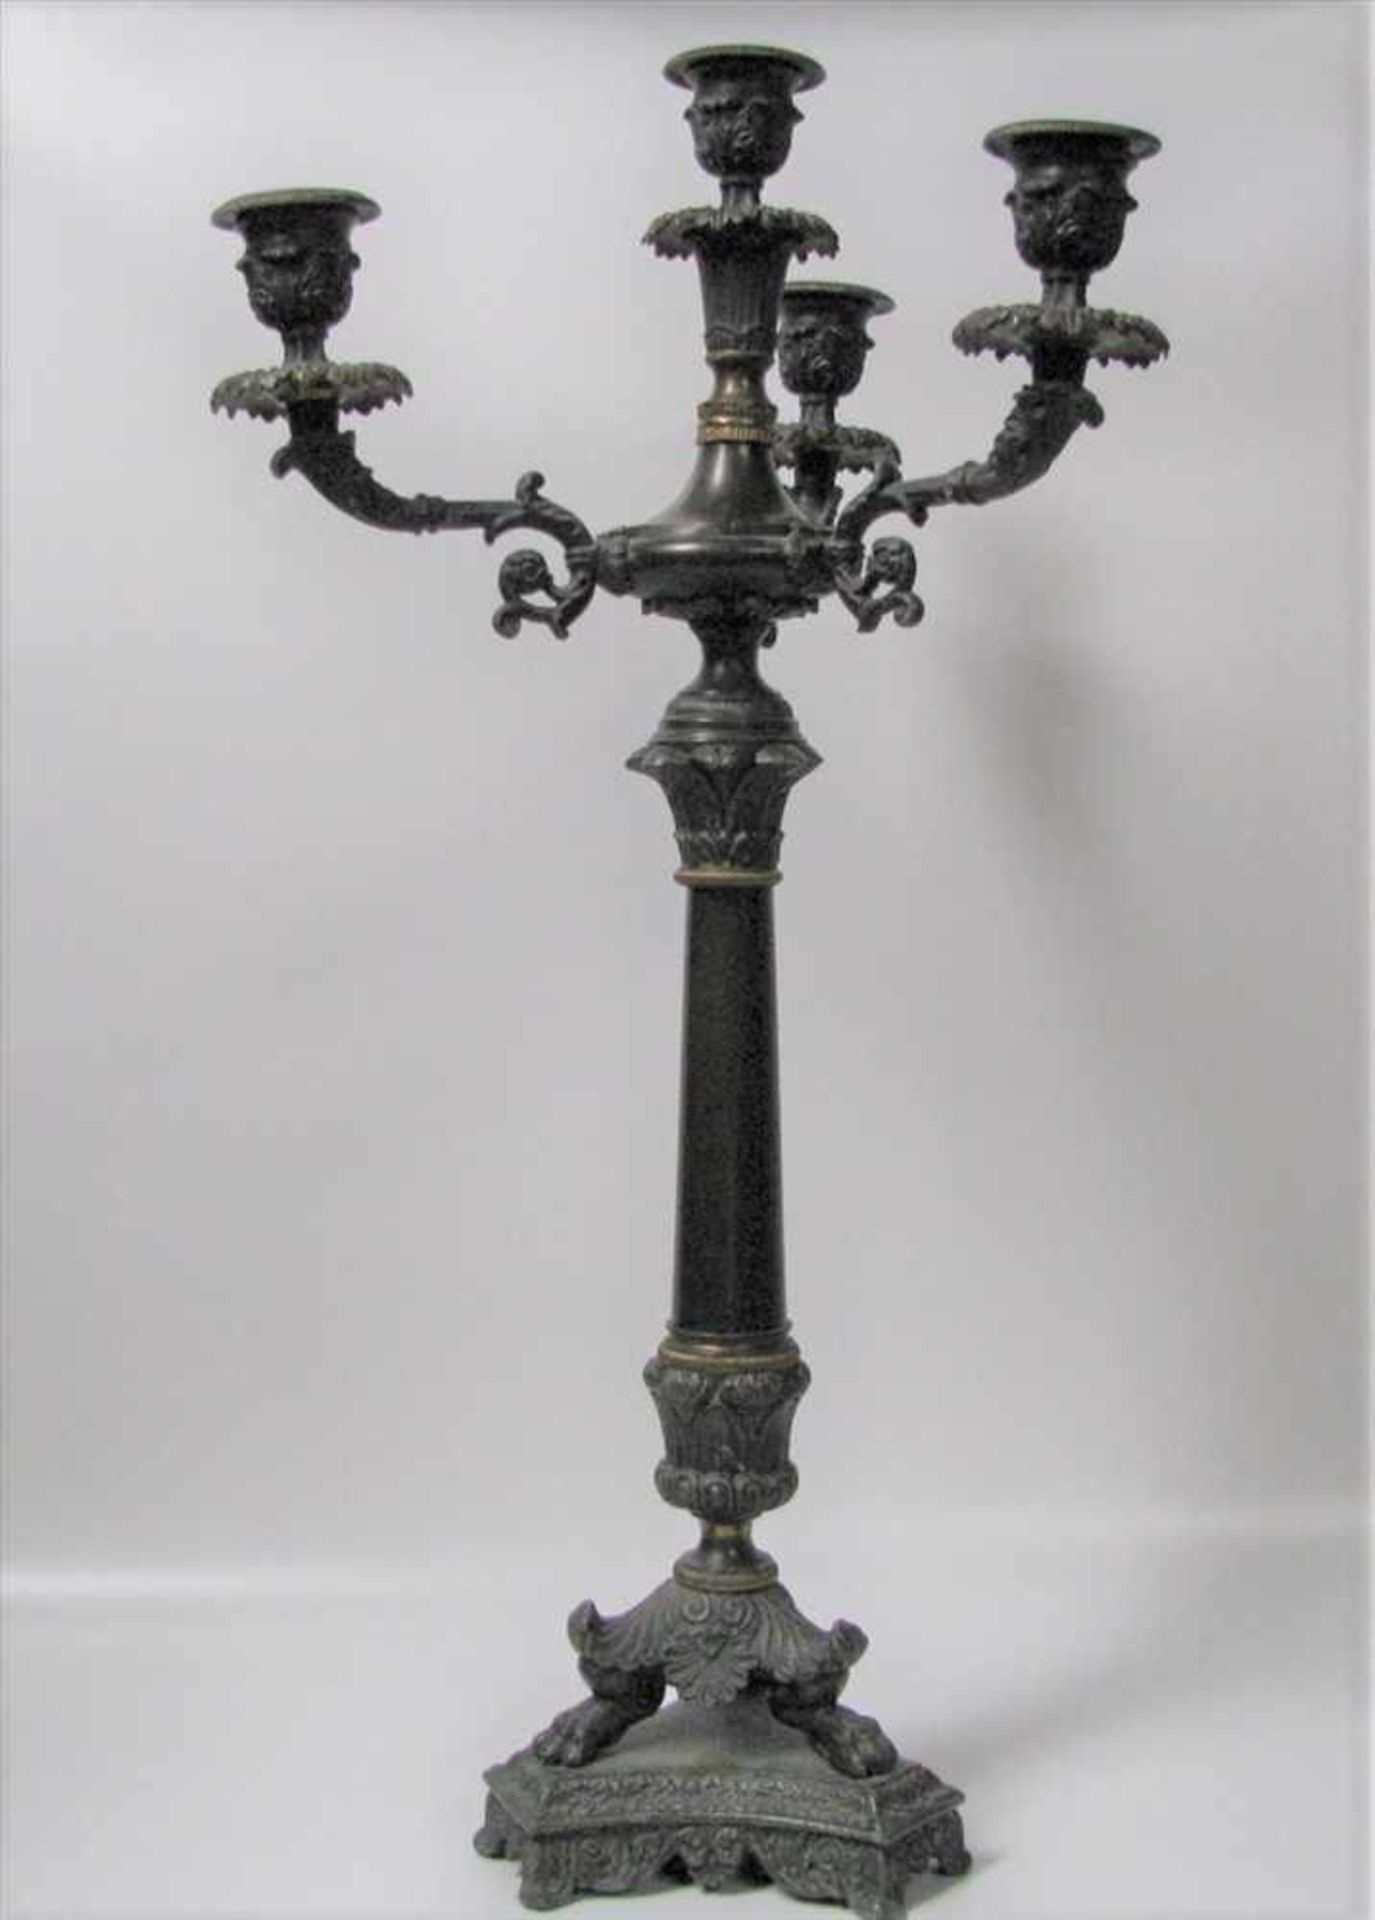 Kerzenleuchter, 19. Jahrhundert, Zinkguss und Messing, 4-flammig, h 58 cm, d 29 cm.